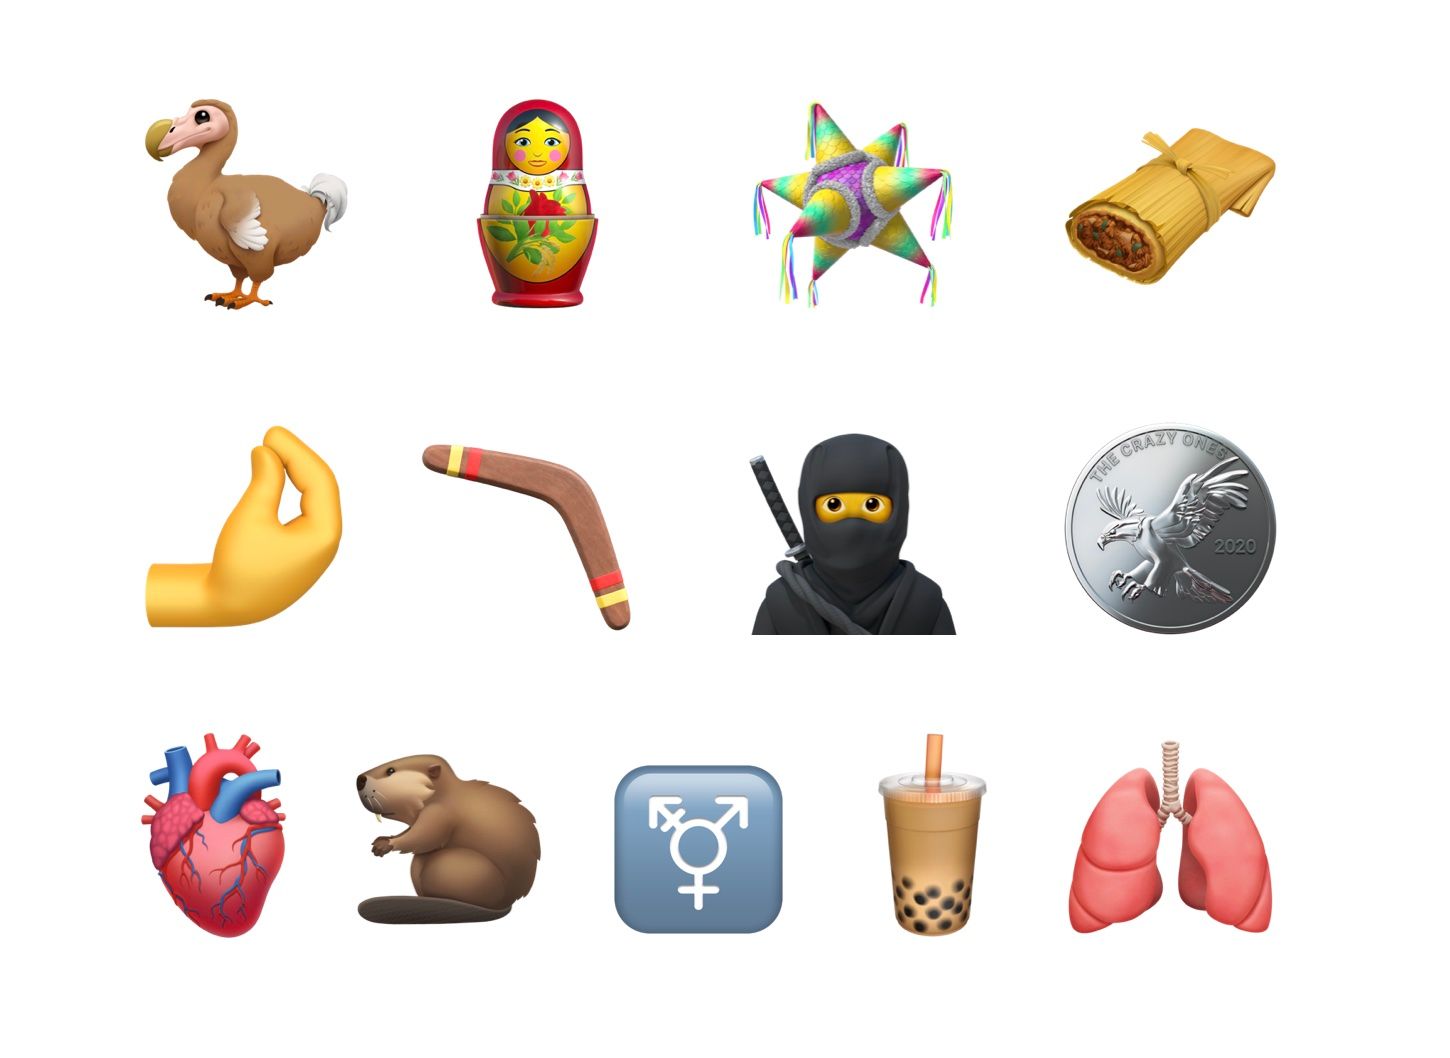 Vista de Apple de la versión de Emoji 13.0 a finales de 2020